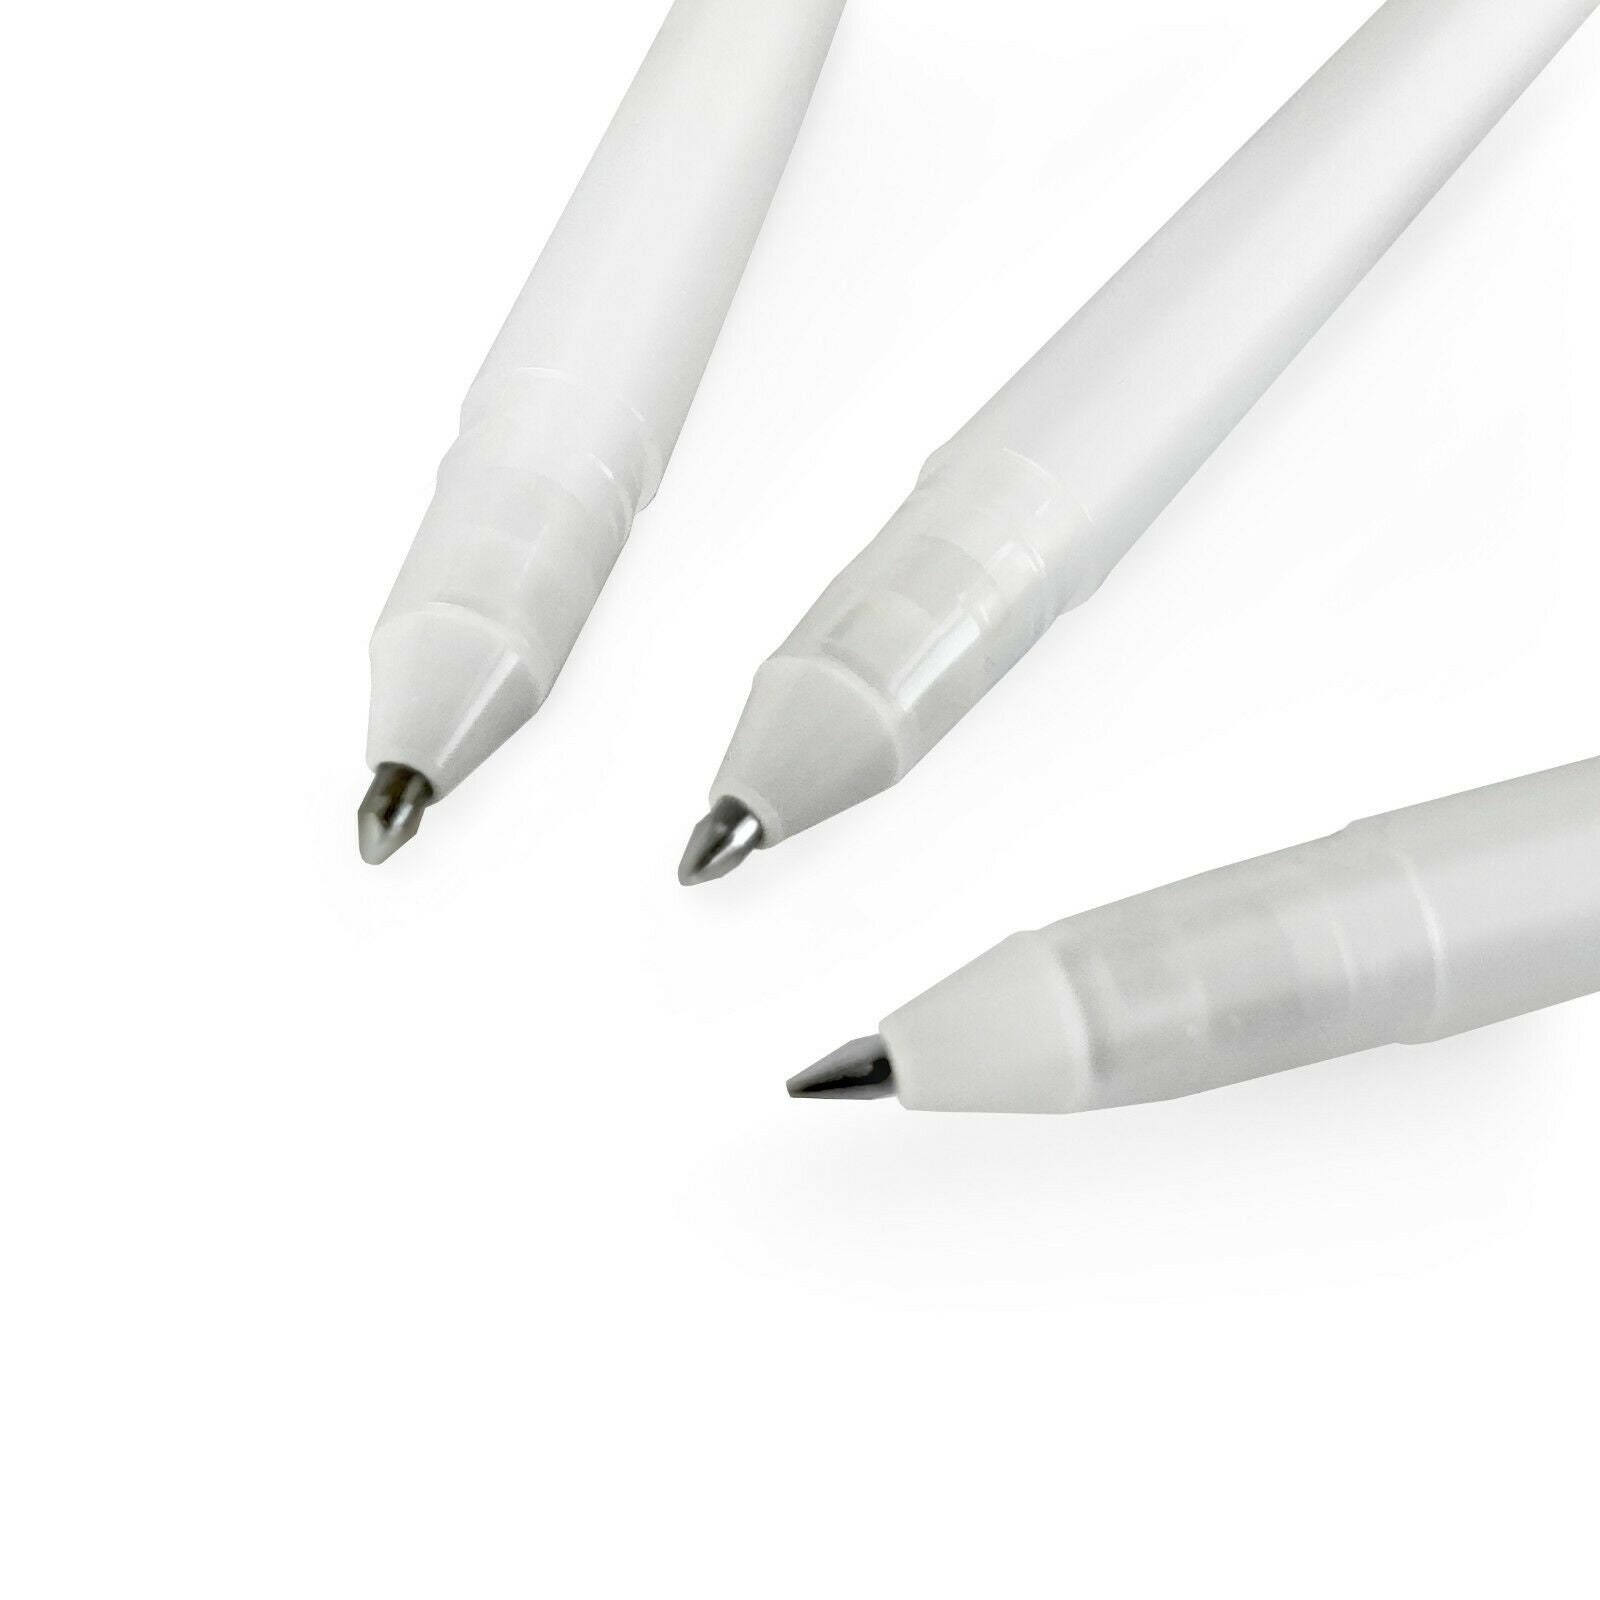 Sakura Gelly Roll Gel Pen White Color 0.5 mm 0.8 mm 1.0 mm Japan -  AliExpress